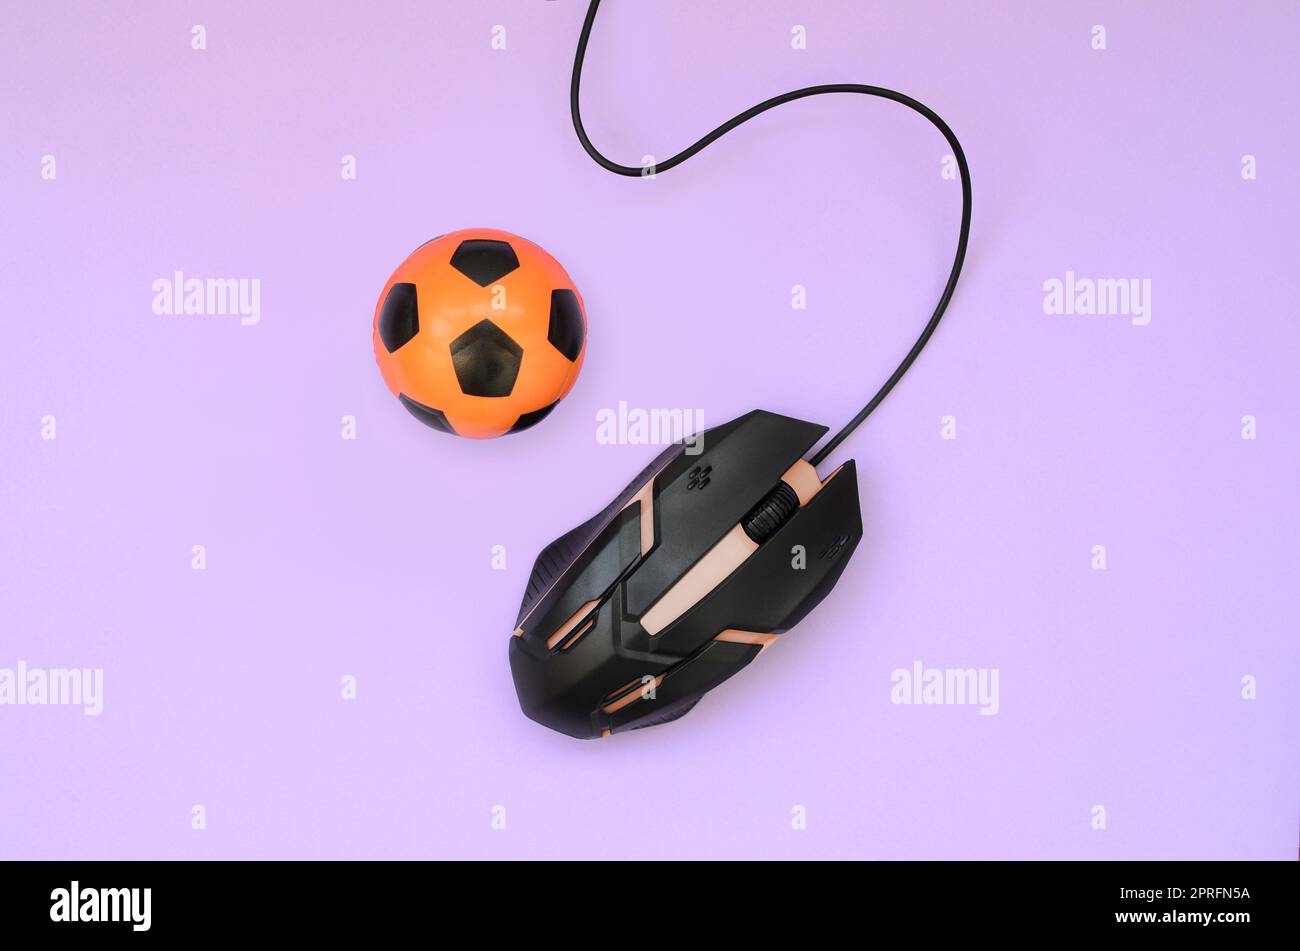 Pallone da calcio con il mouse del computer su sfondo viola. Concetto di videogiochi, eSports, sport scommesse e gioco d'azzardo online Foto Stock